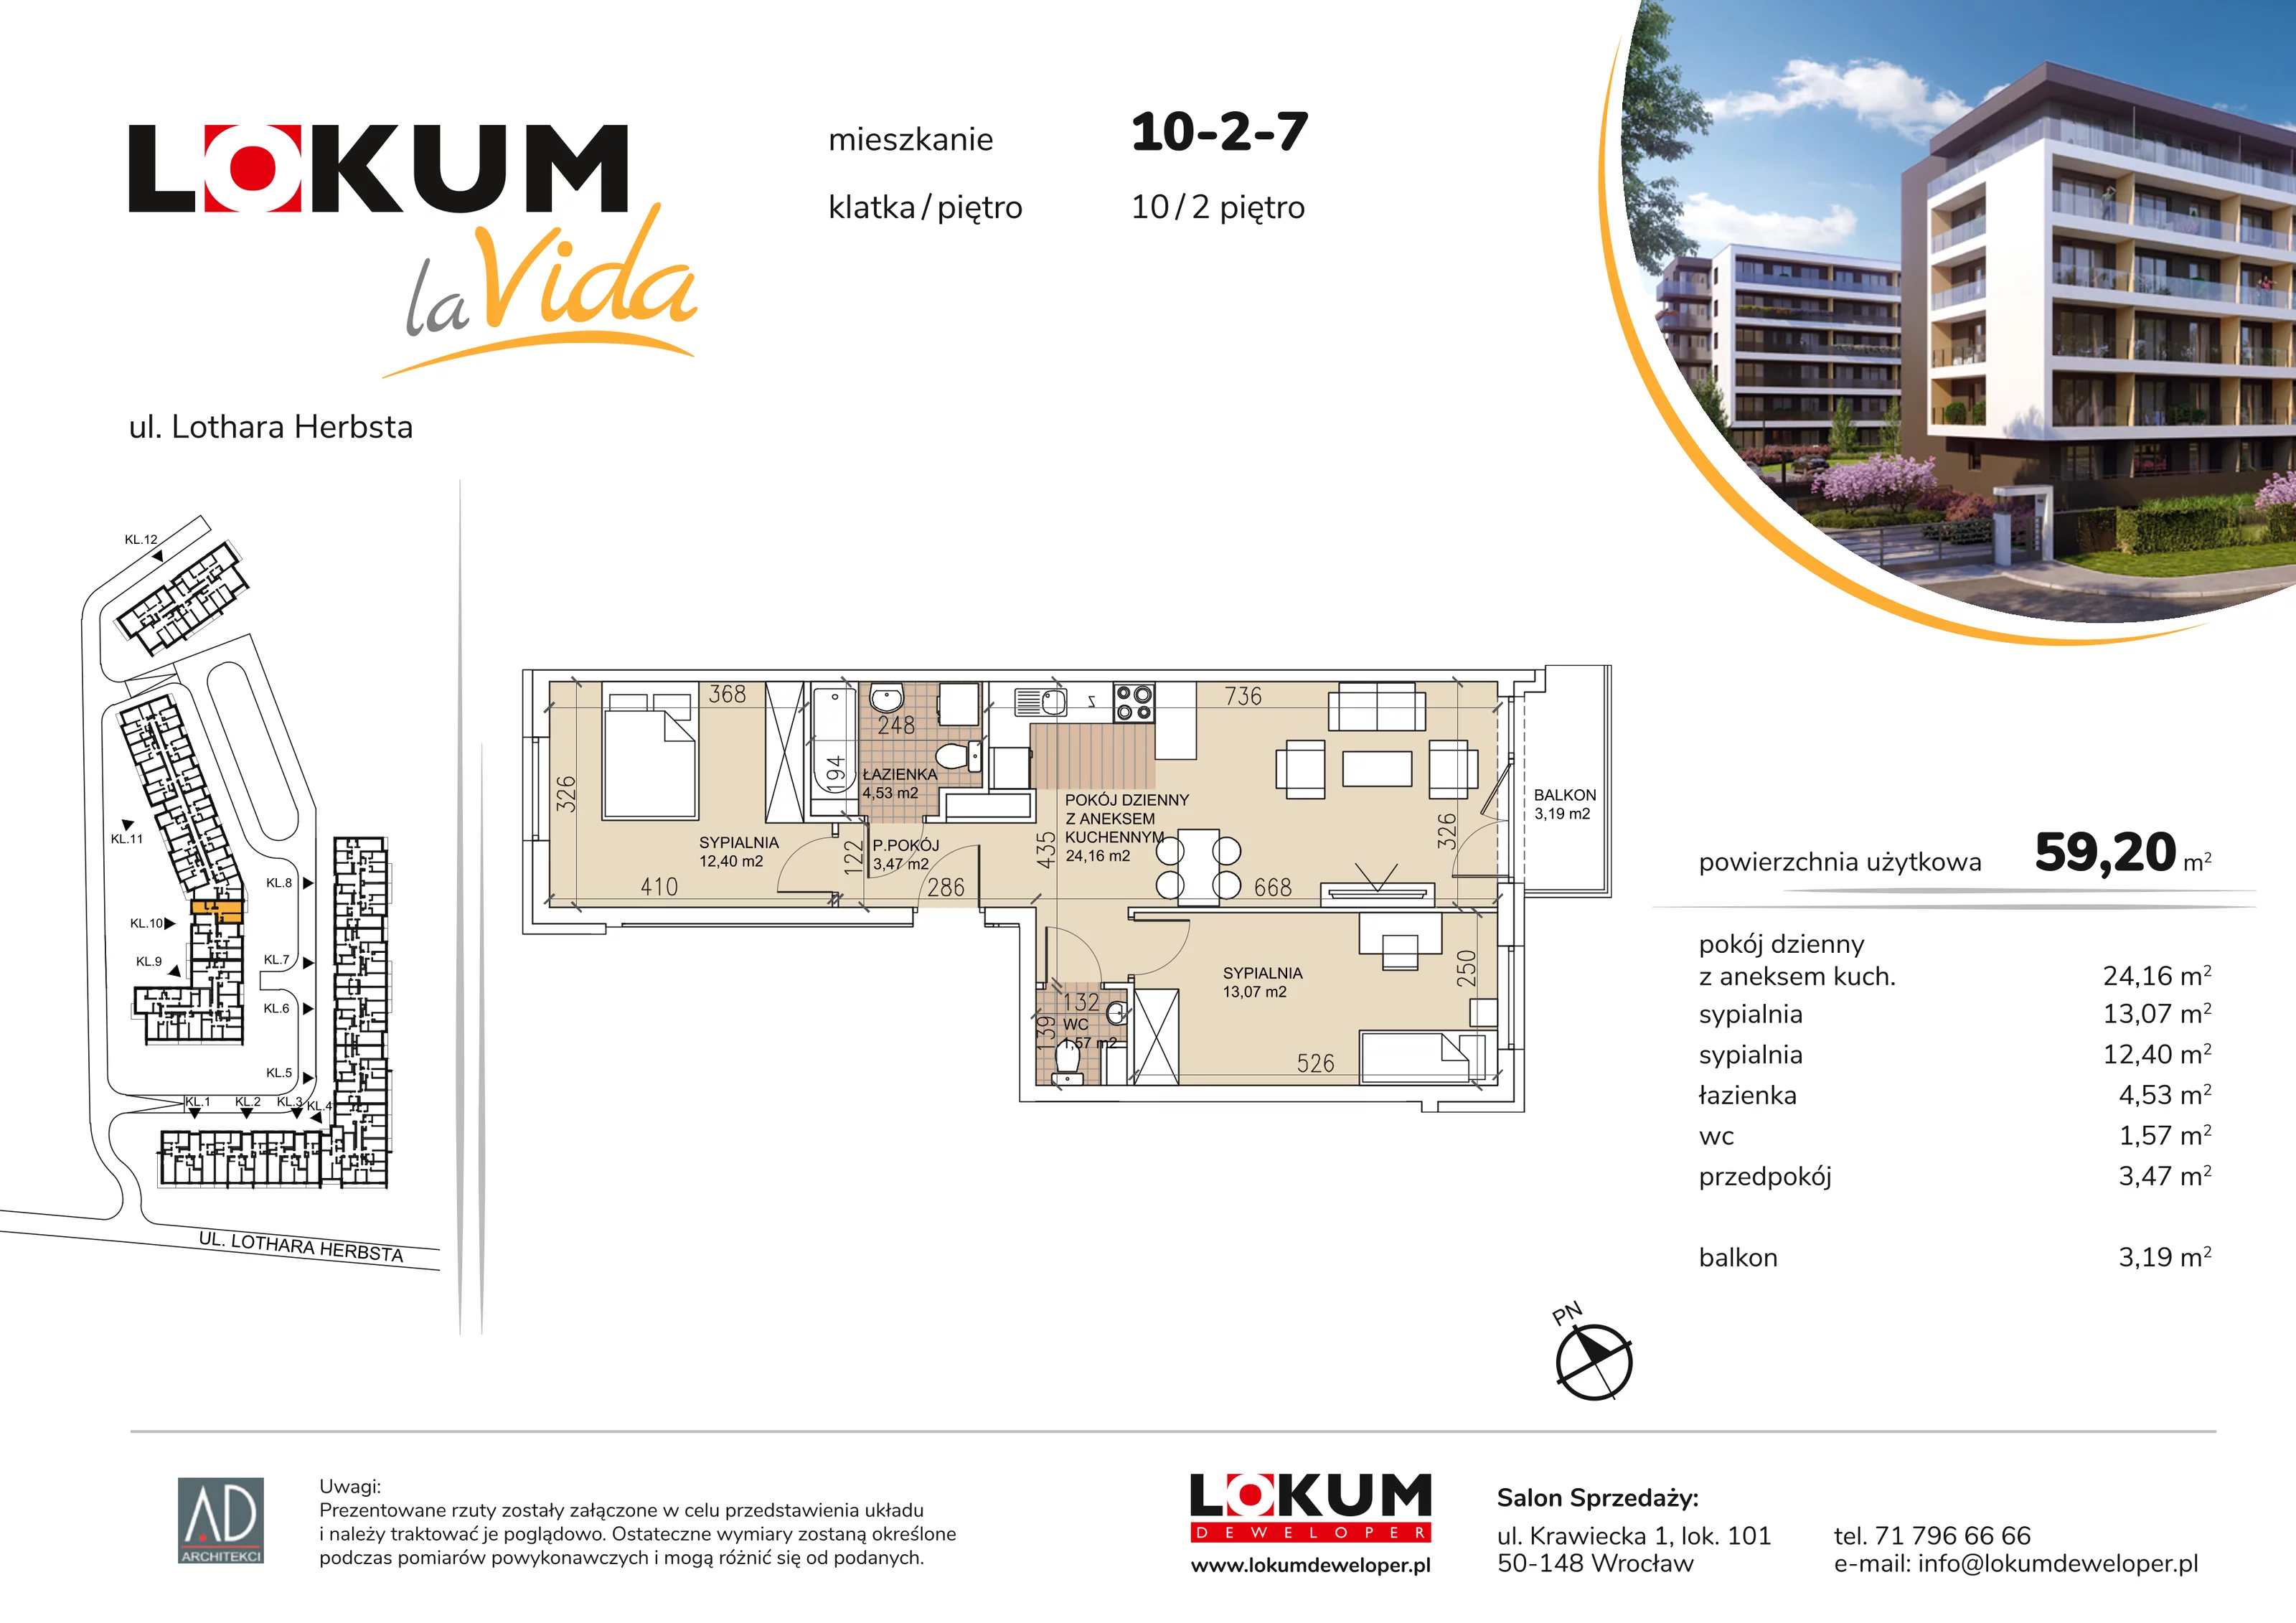 Mieszkanie 59,20 m², piętro 2, oferta nr 10-2-7, Lokum la Vida, Wrocław, Sołtysowice, ul. Lothara Herbsta